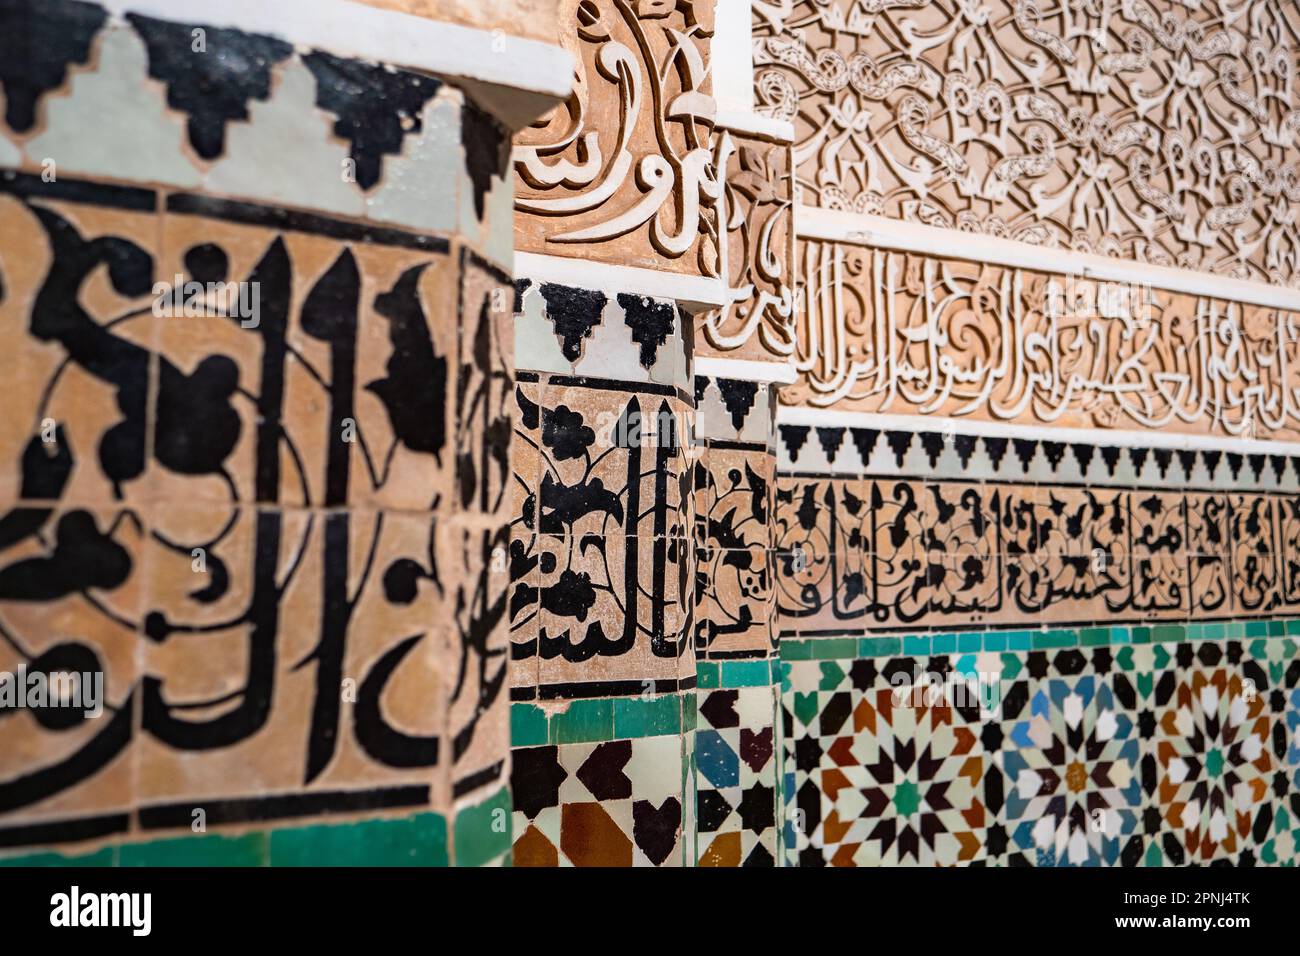 Tradiitionelle arabisch Wandkacheln im Inneren einer Koranschule Foto Stock